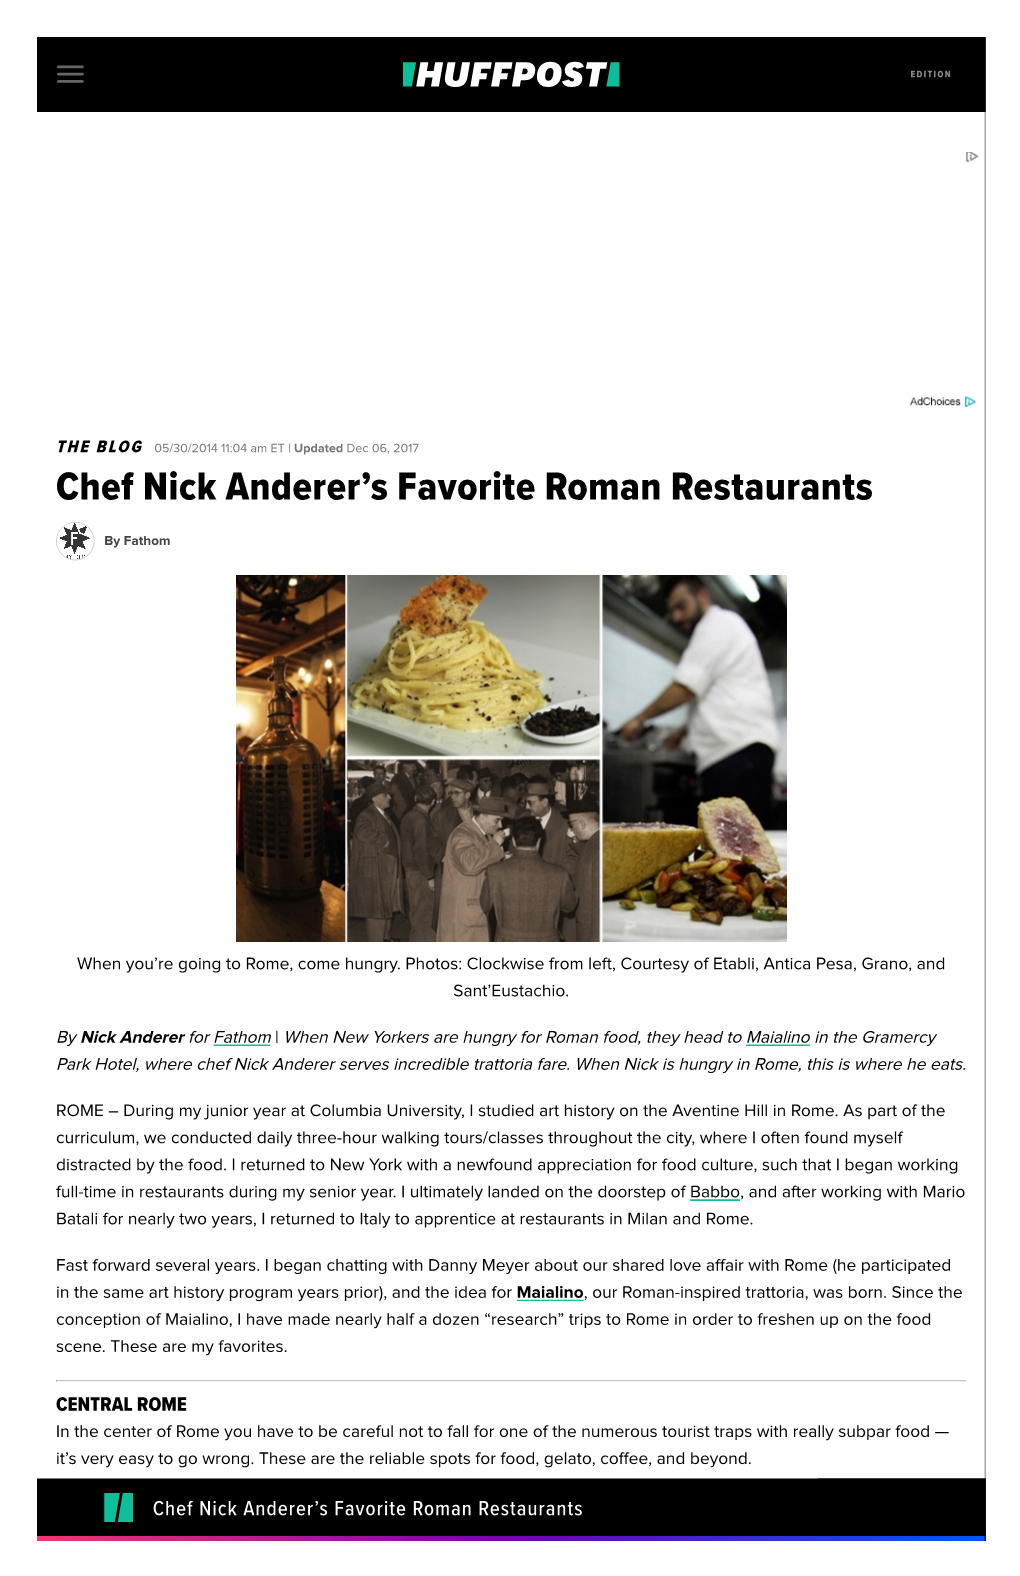 Chef Nick Anderer's Favorite Roman Restaurants